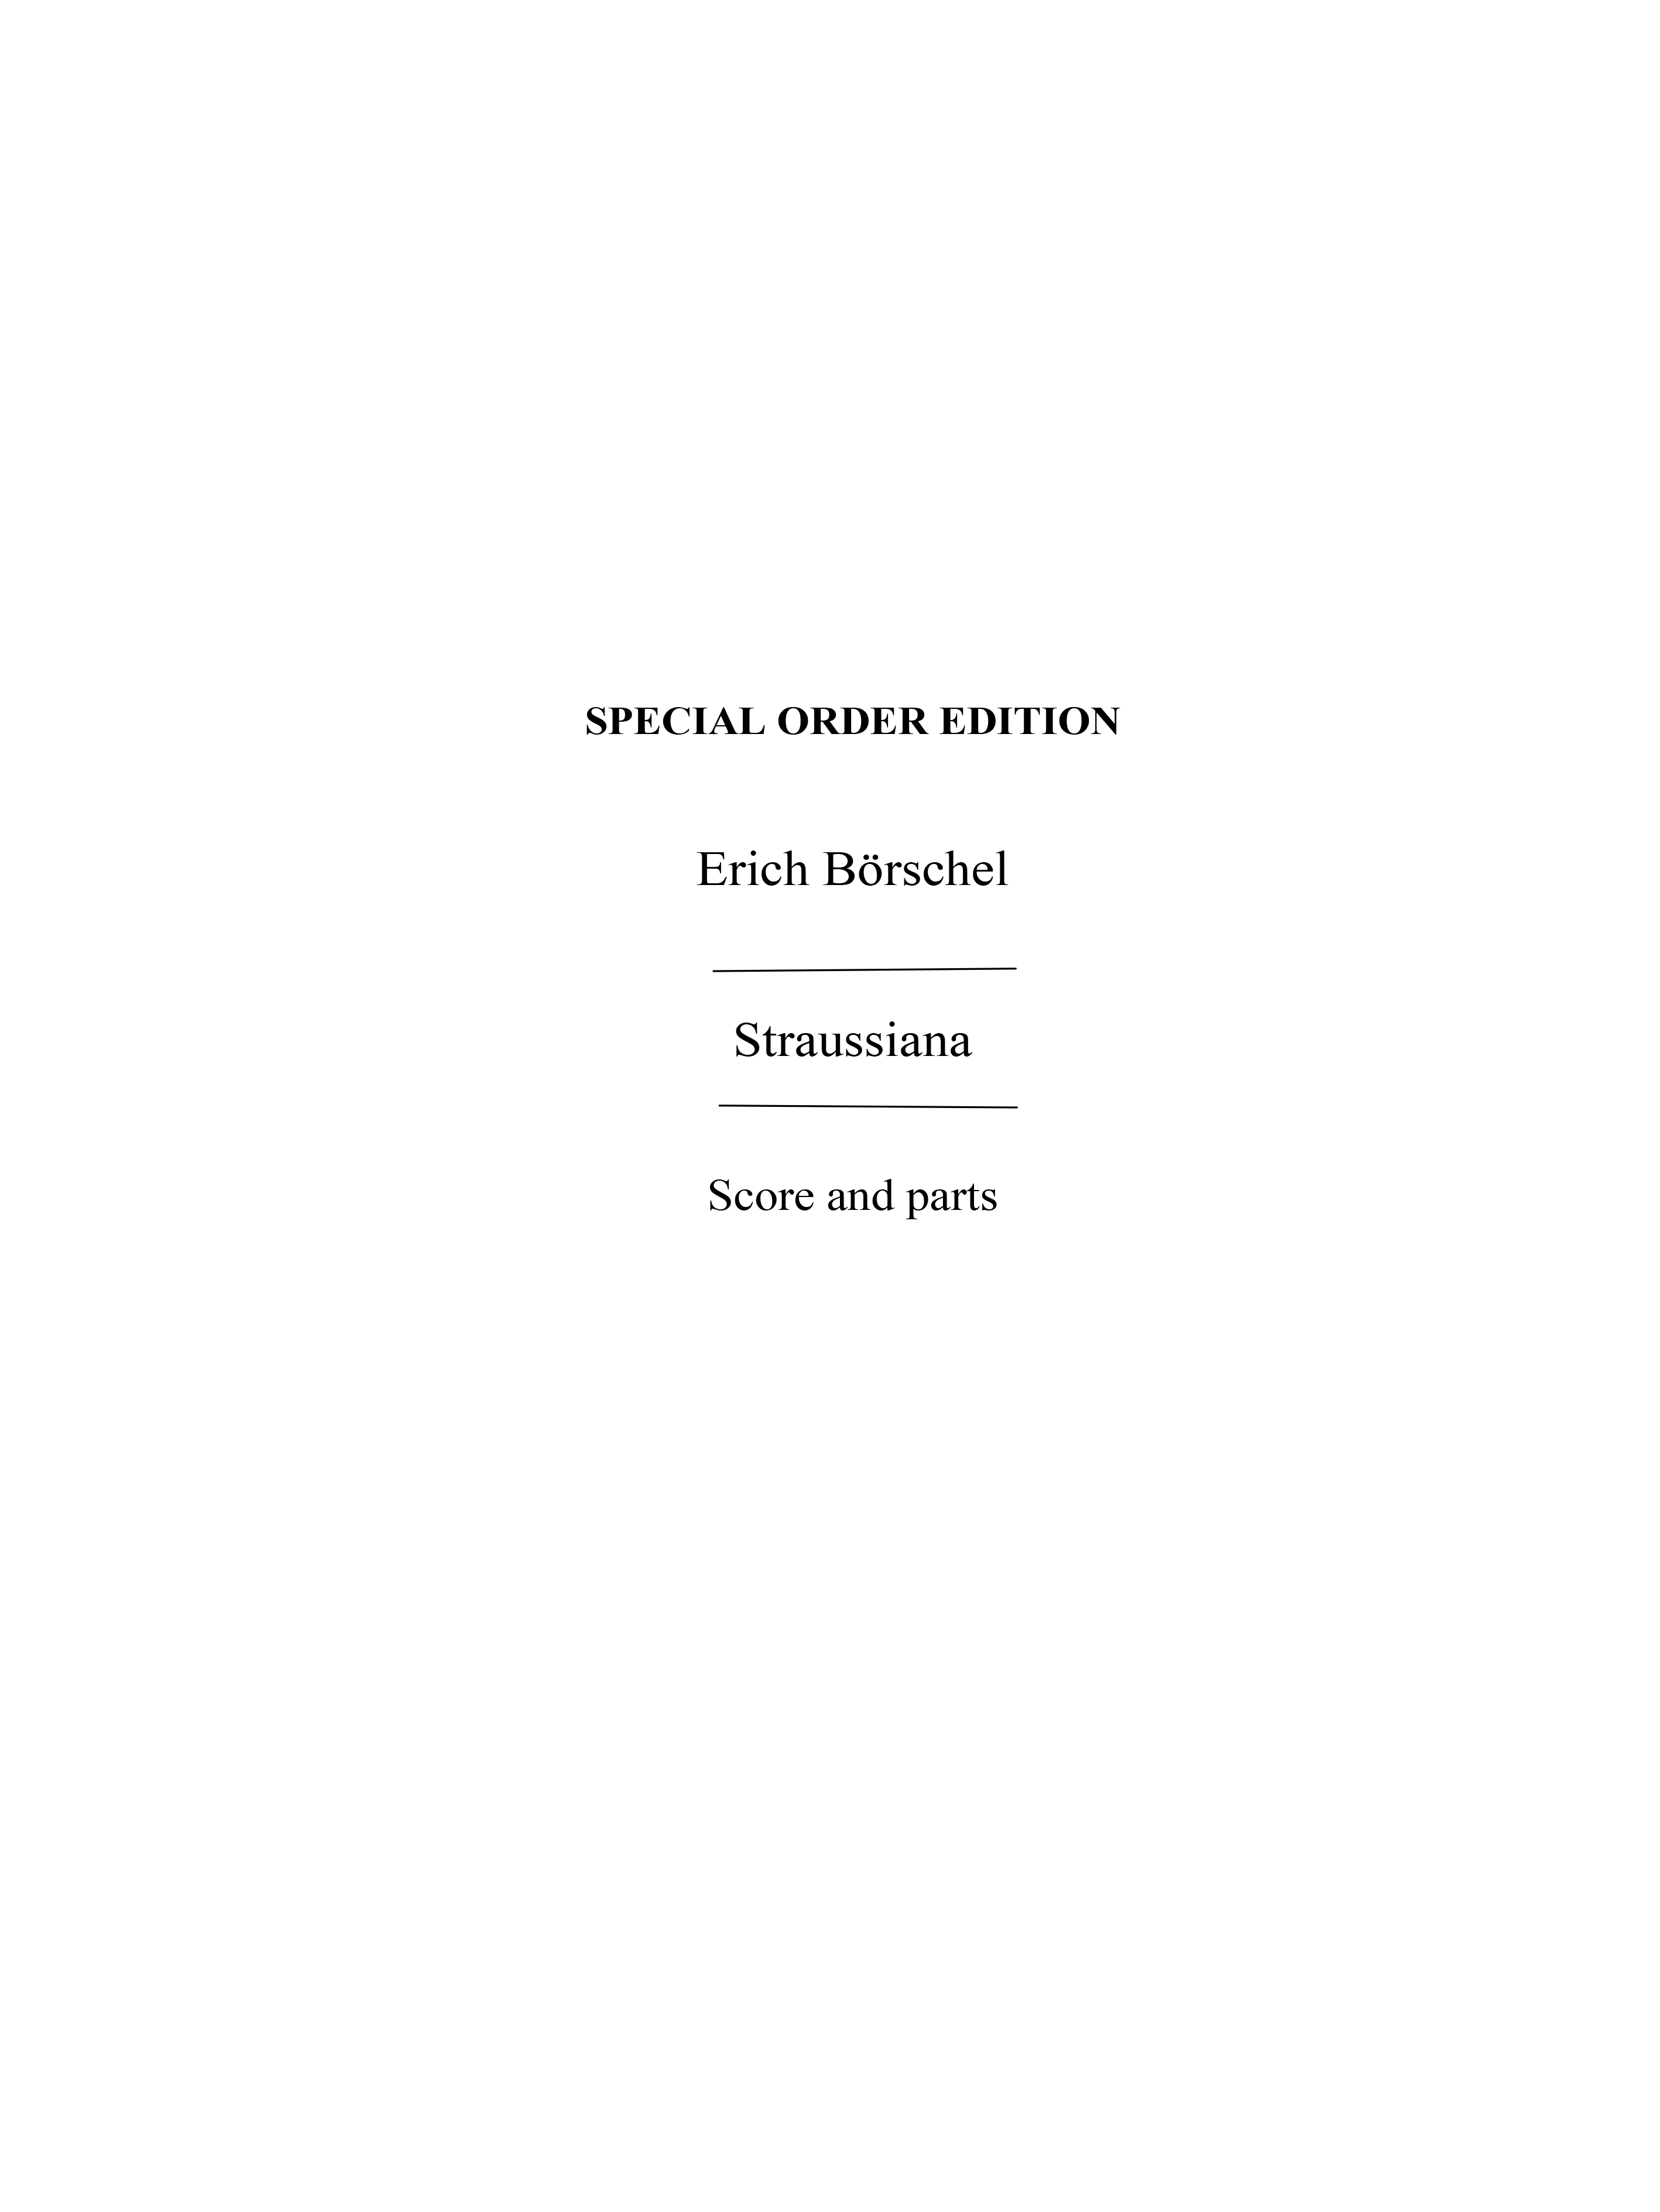 Borschel, E Straussiana Orch Pf Sc/Pts